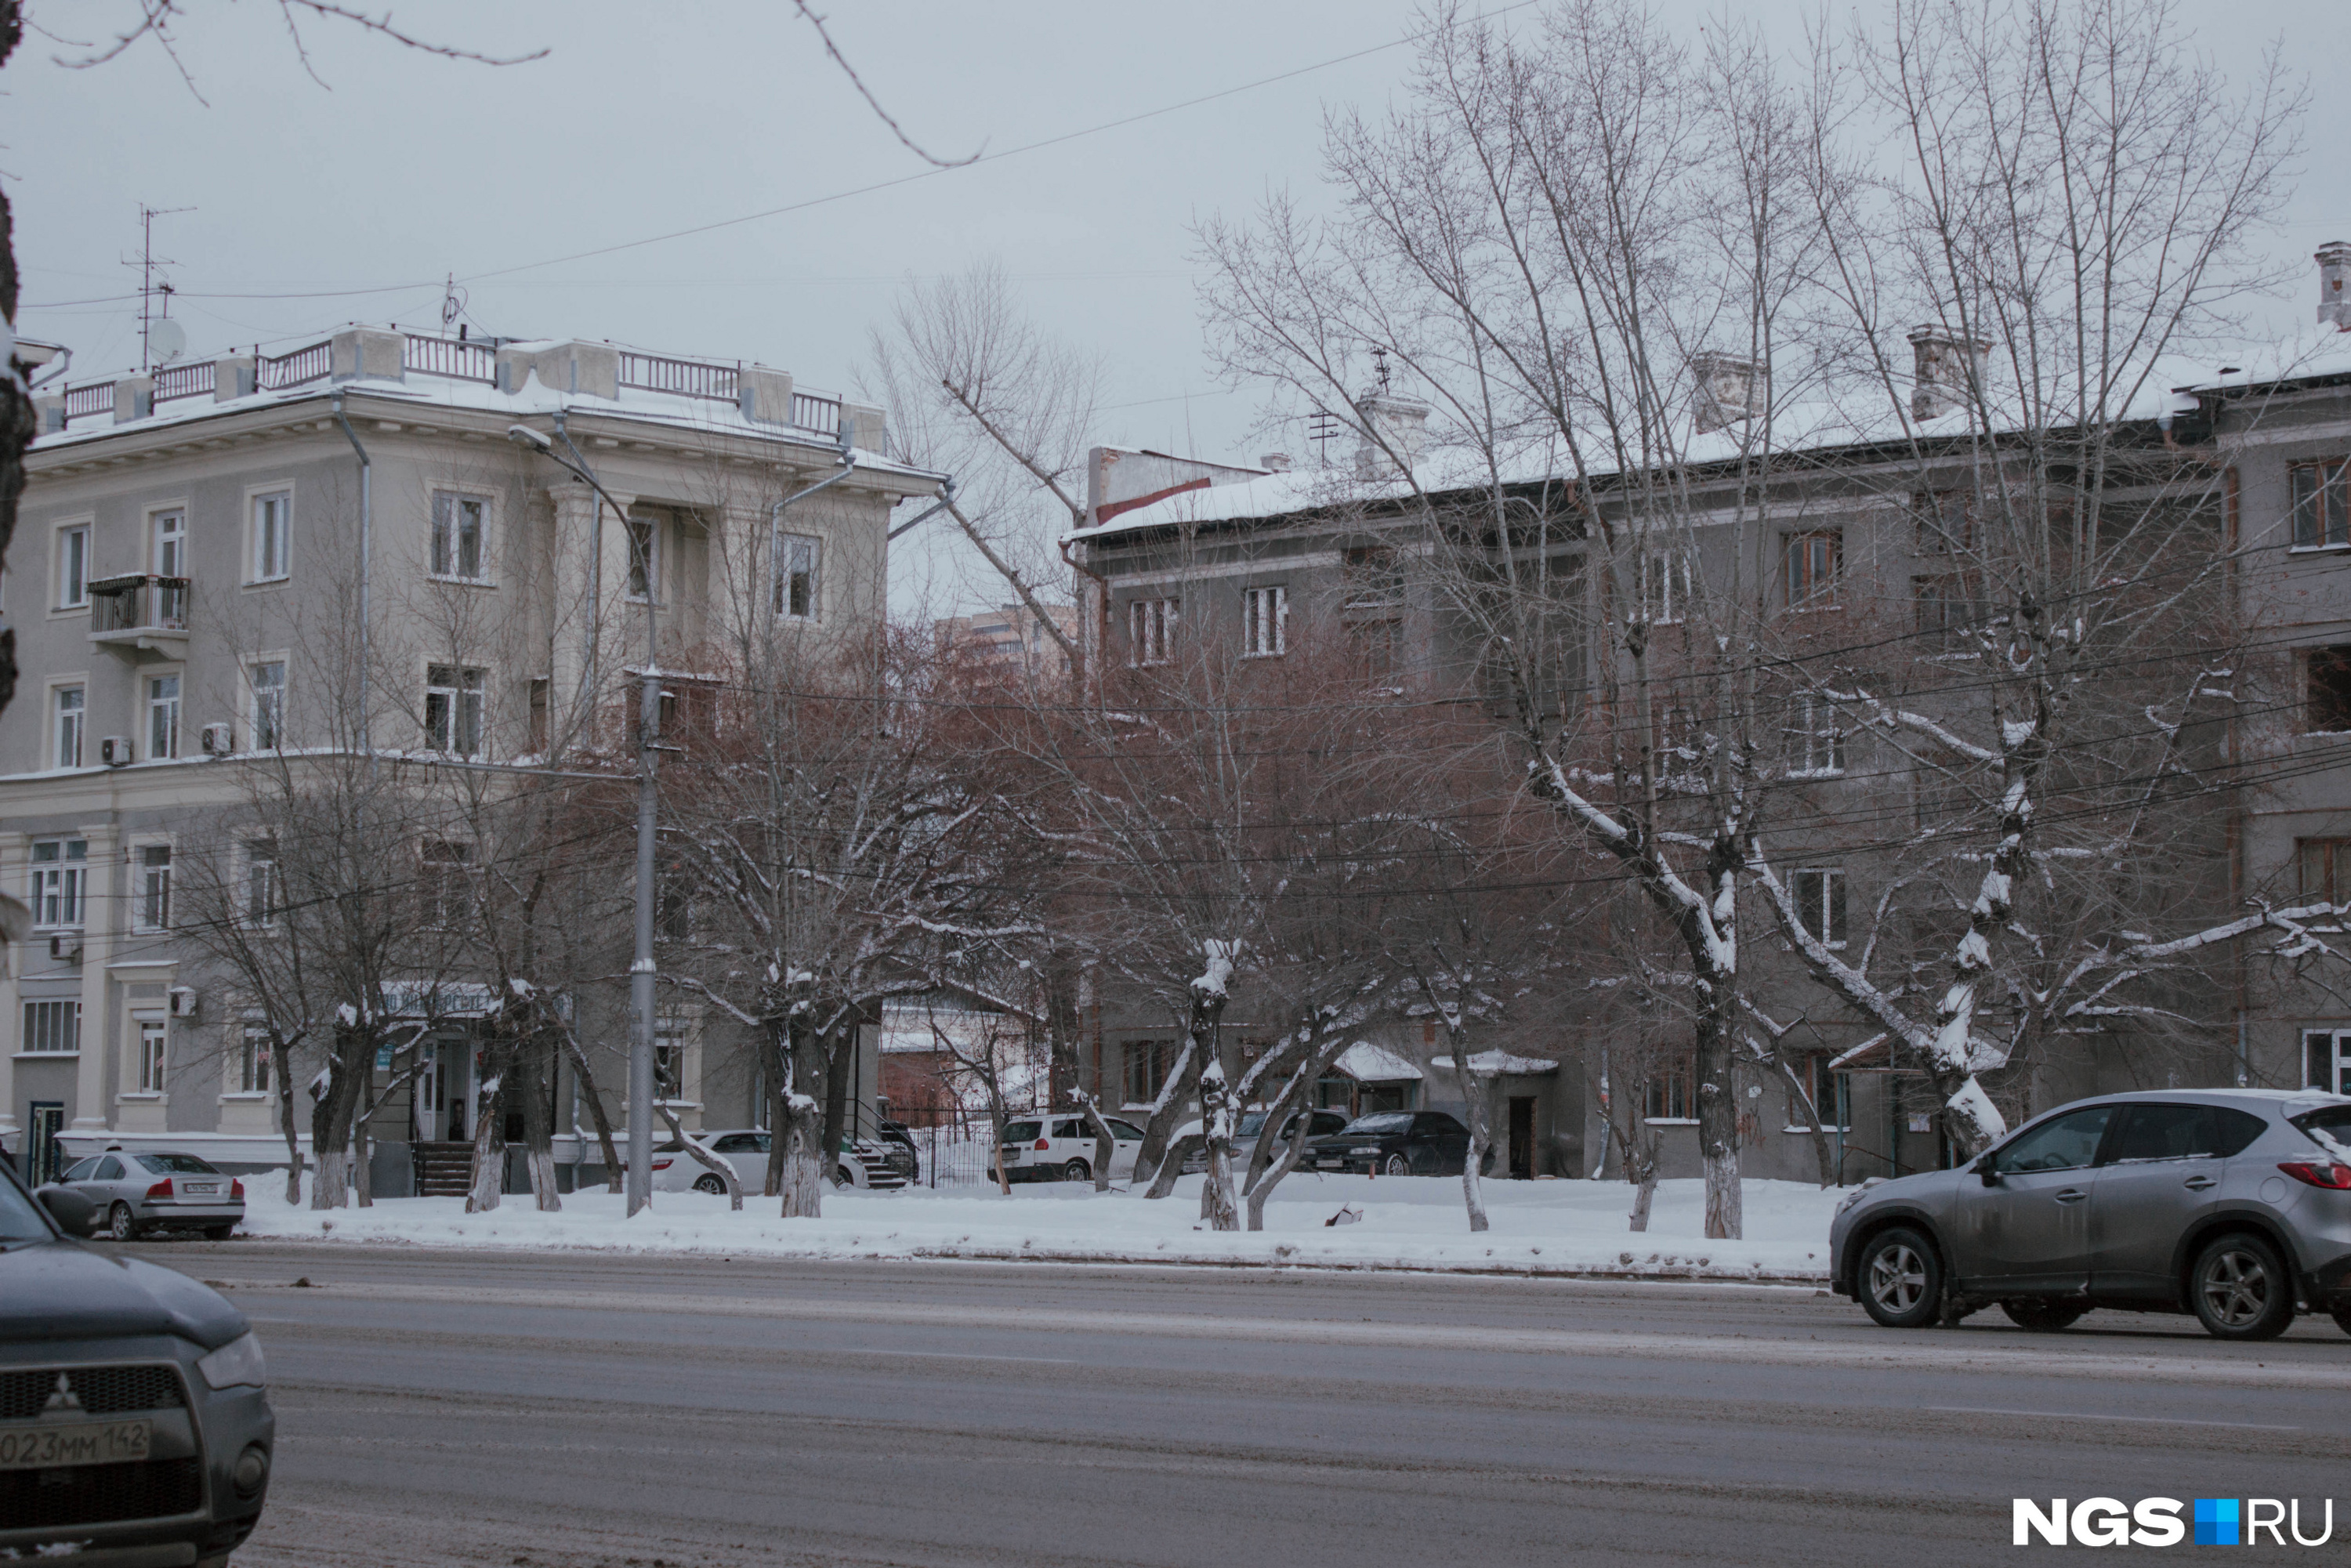 Разрушающийся пустой дом выглядит чужеродным элементом среди архитектурного ансамбля на Станиславского